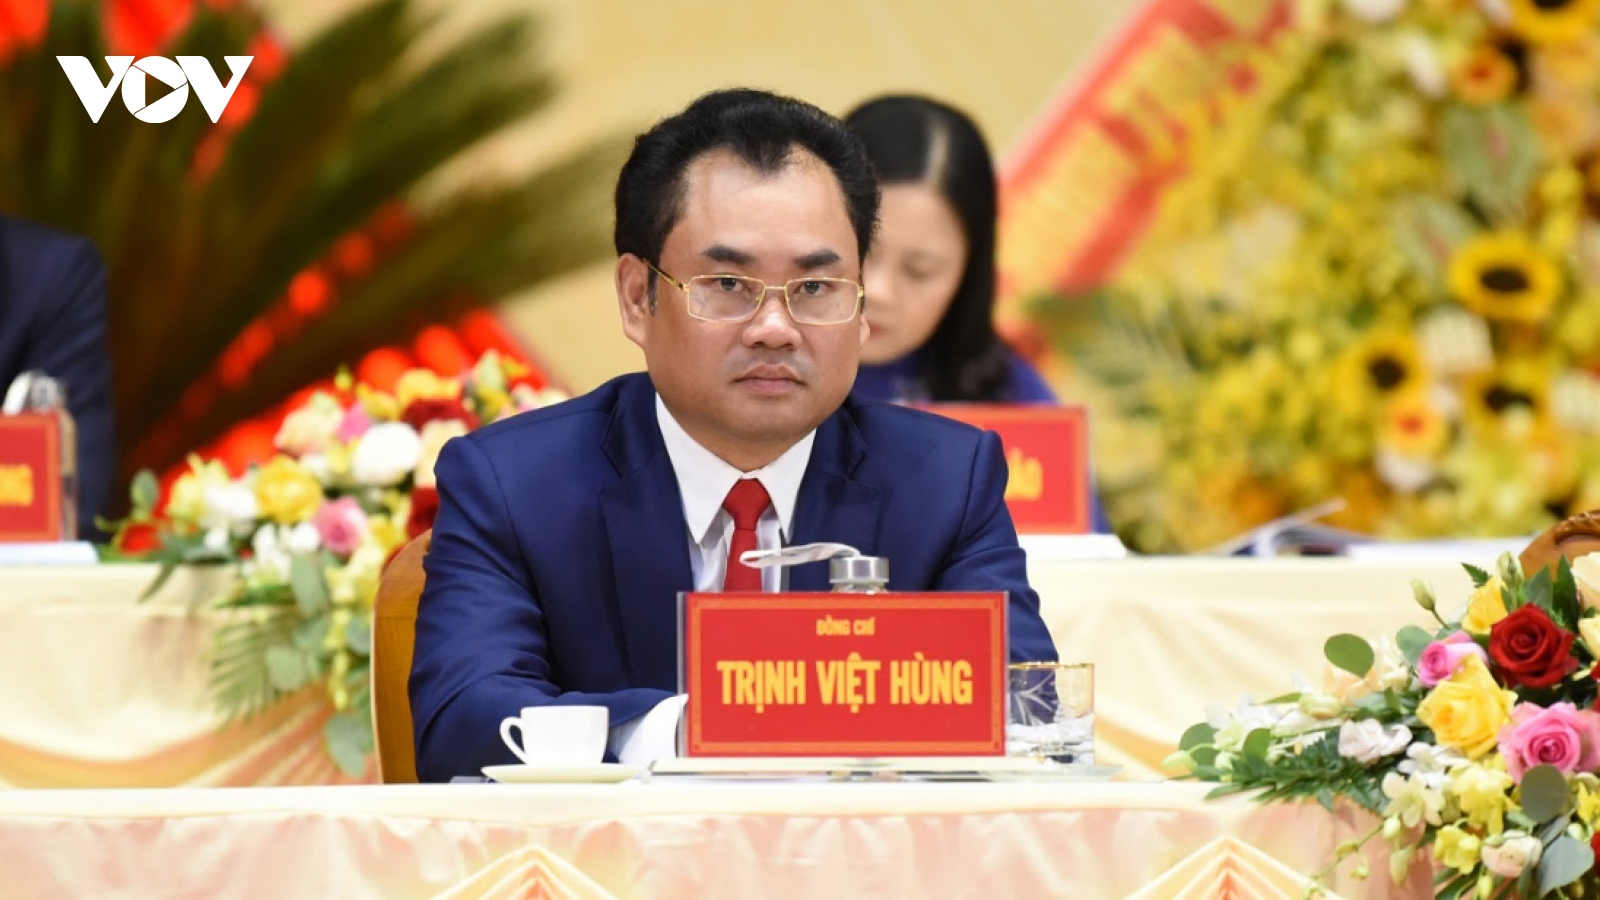 Ông Trịnh Việt Hùng tiếp tục được bầu giữ chức Chủ tịch tỉnh Thái Nguyên